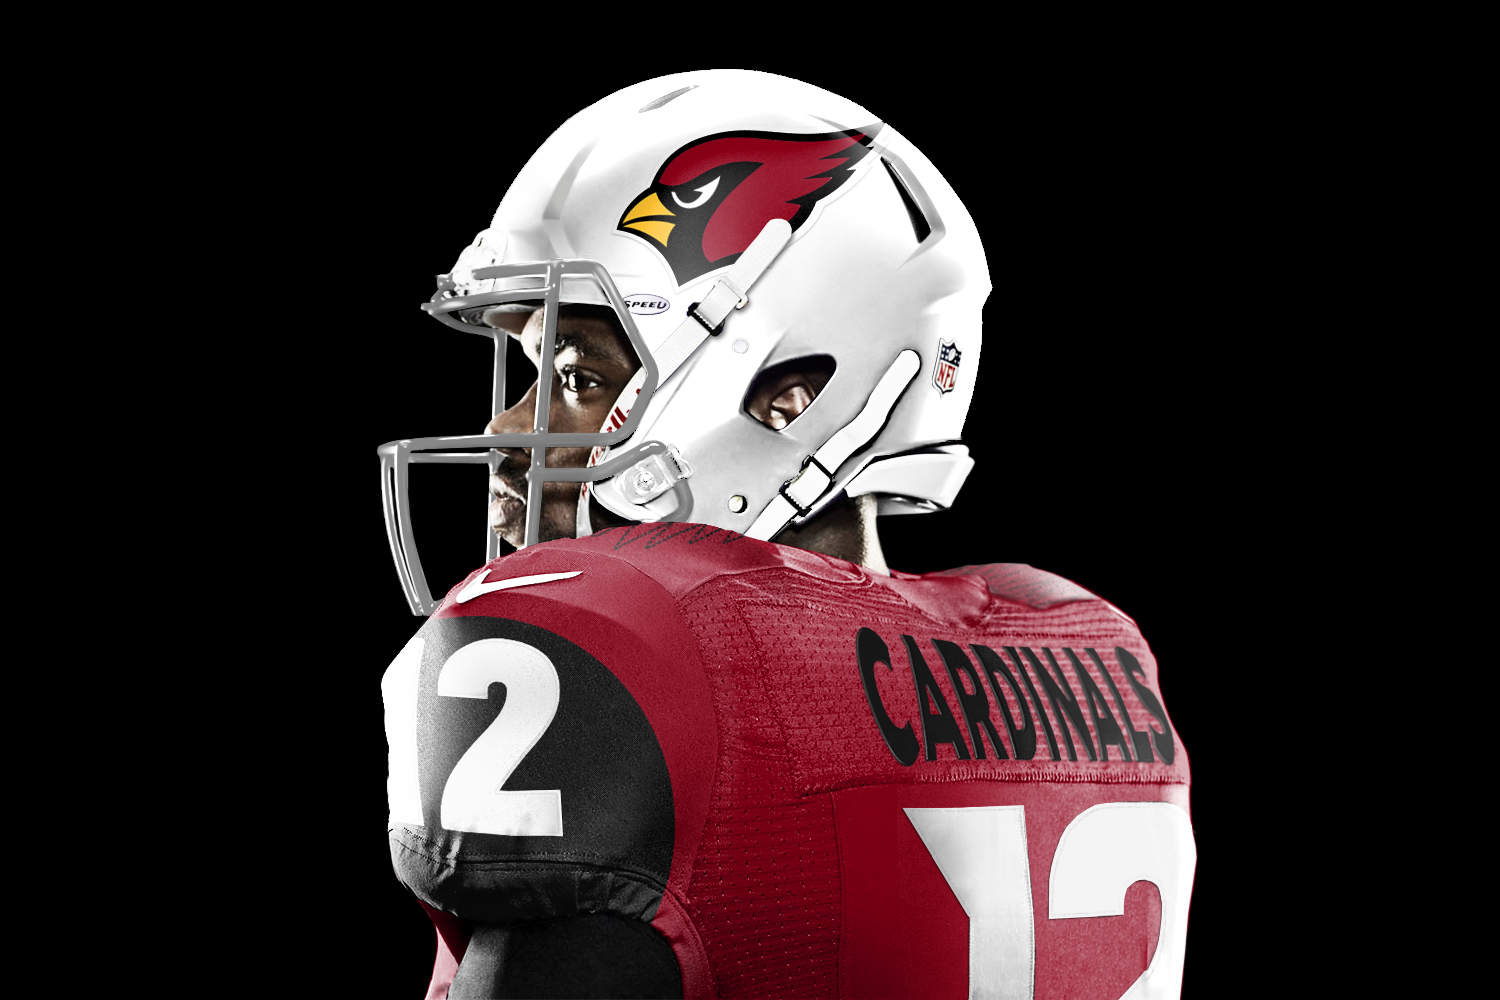 arizona cardinals uniforms 2020